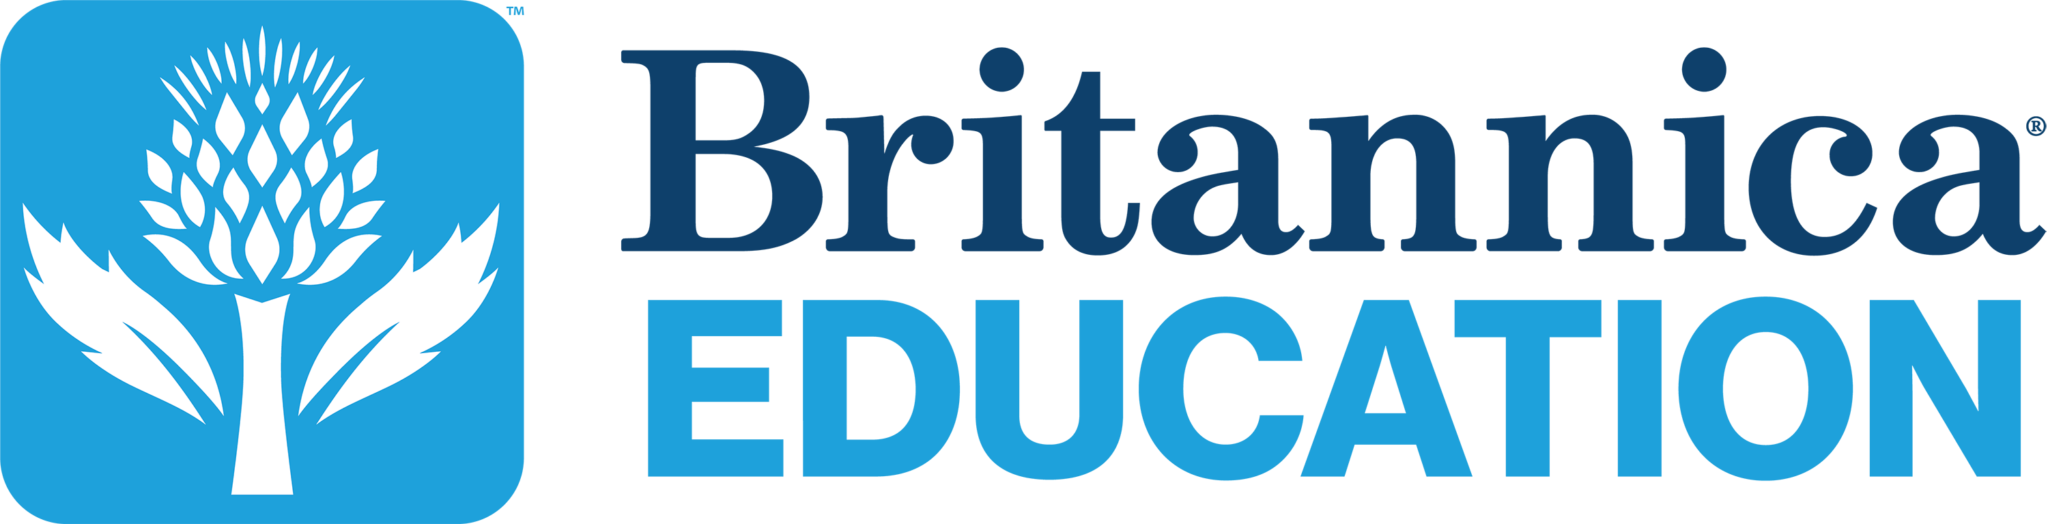 Britannica Education home